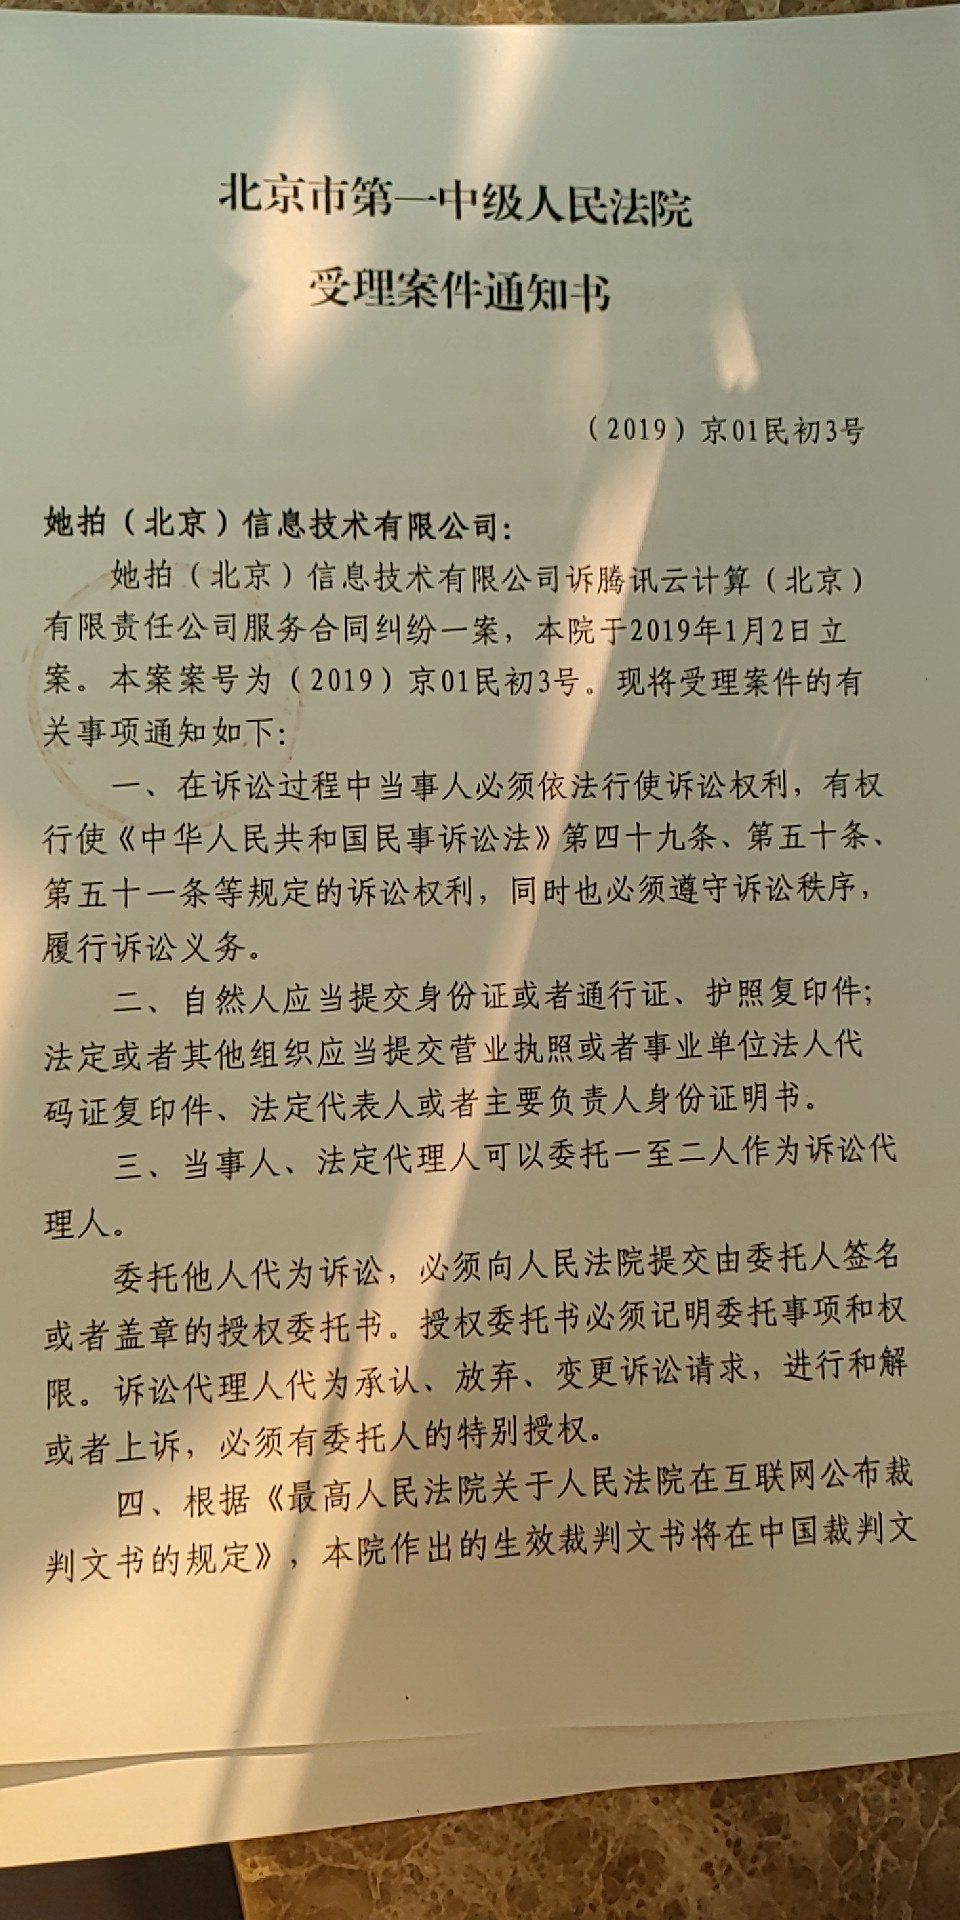 北京市第一中级人民法院已正式受理此案（王宏达提供）。